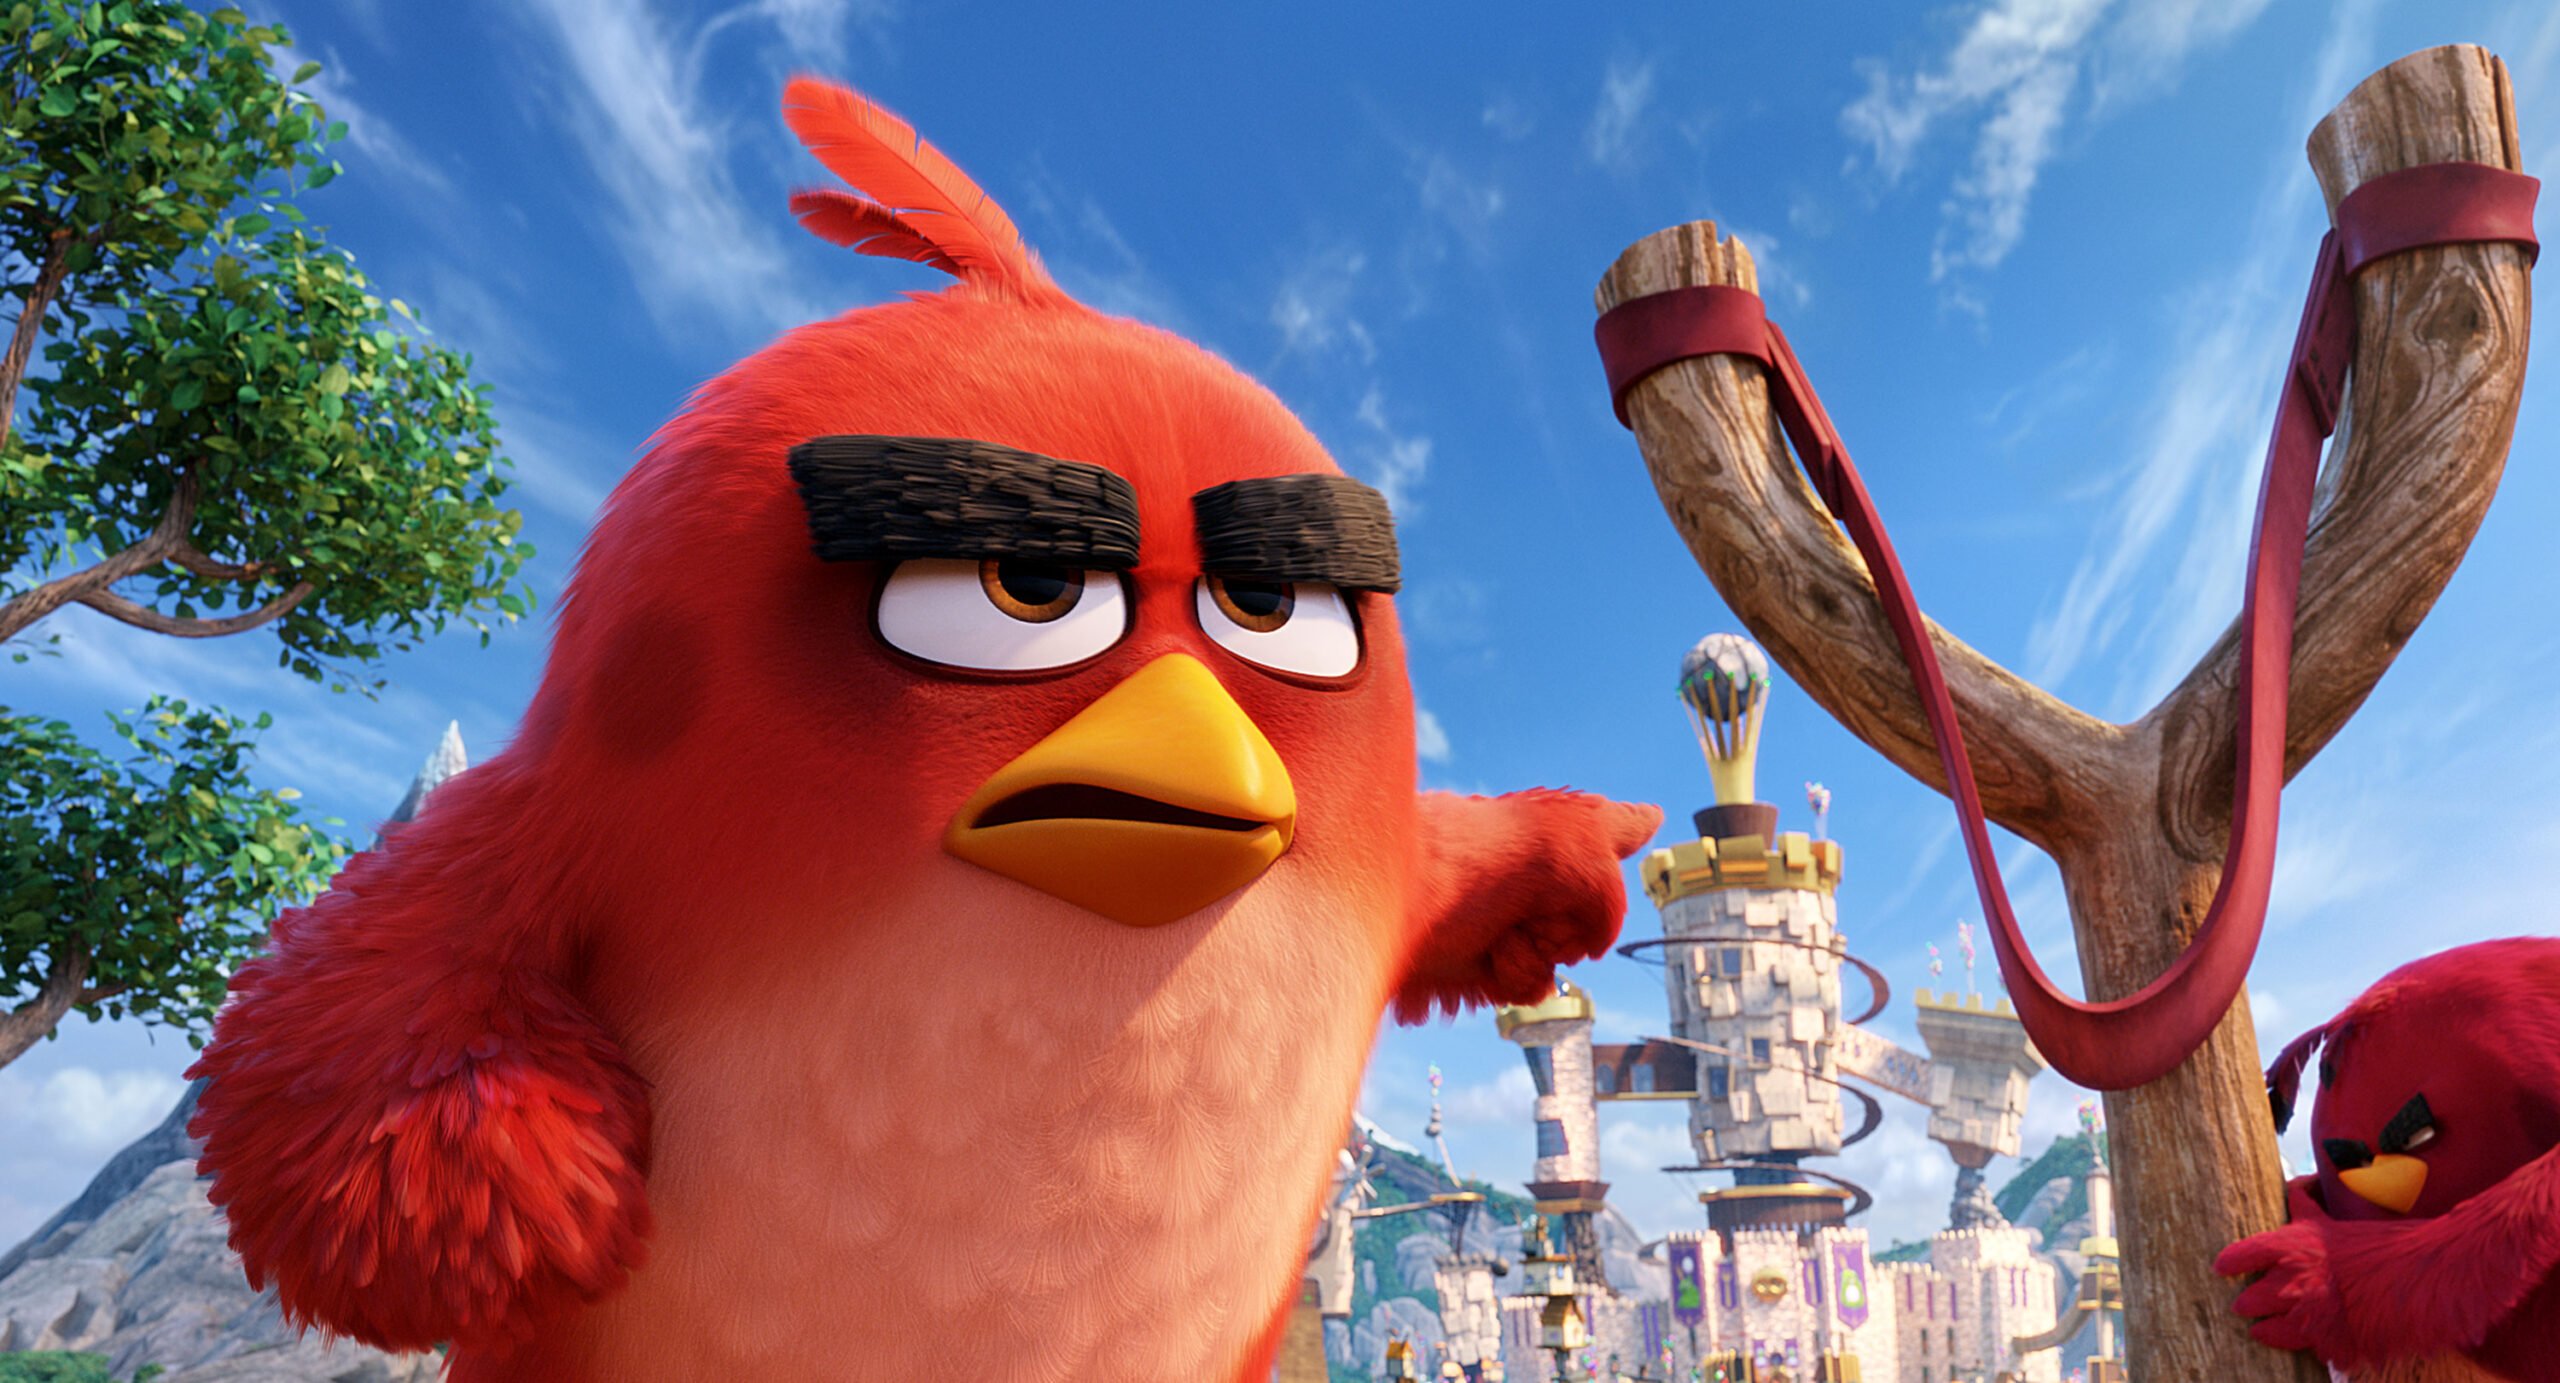 Crítica: “Angry Birds” de Clay Kaytis e Fergal Reilly